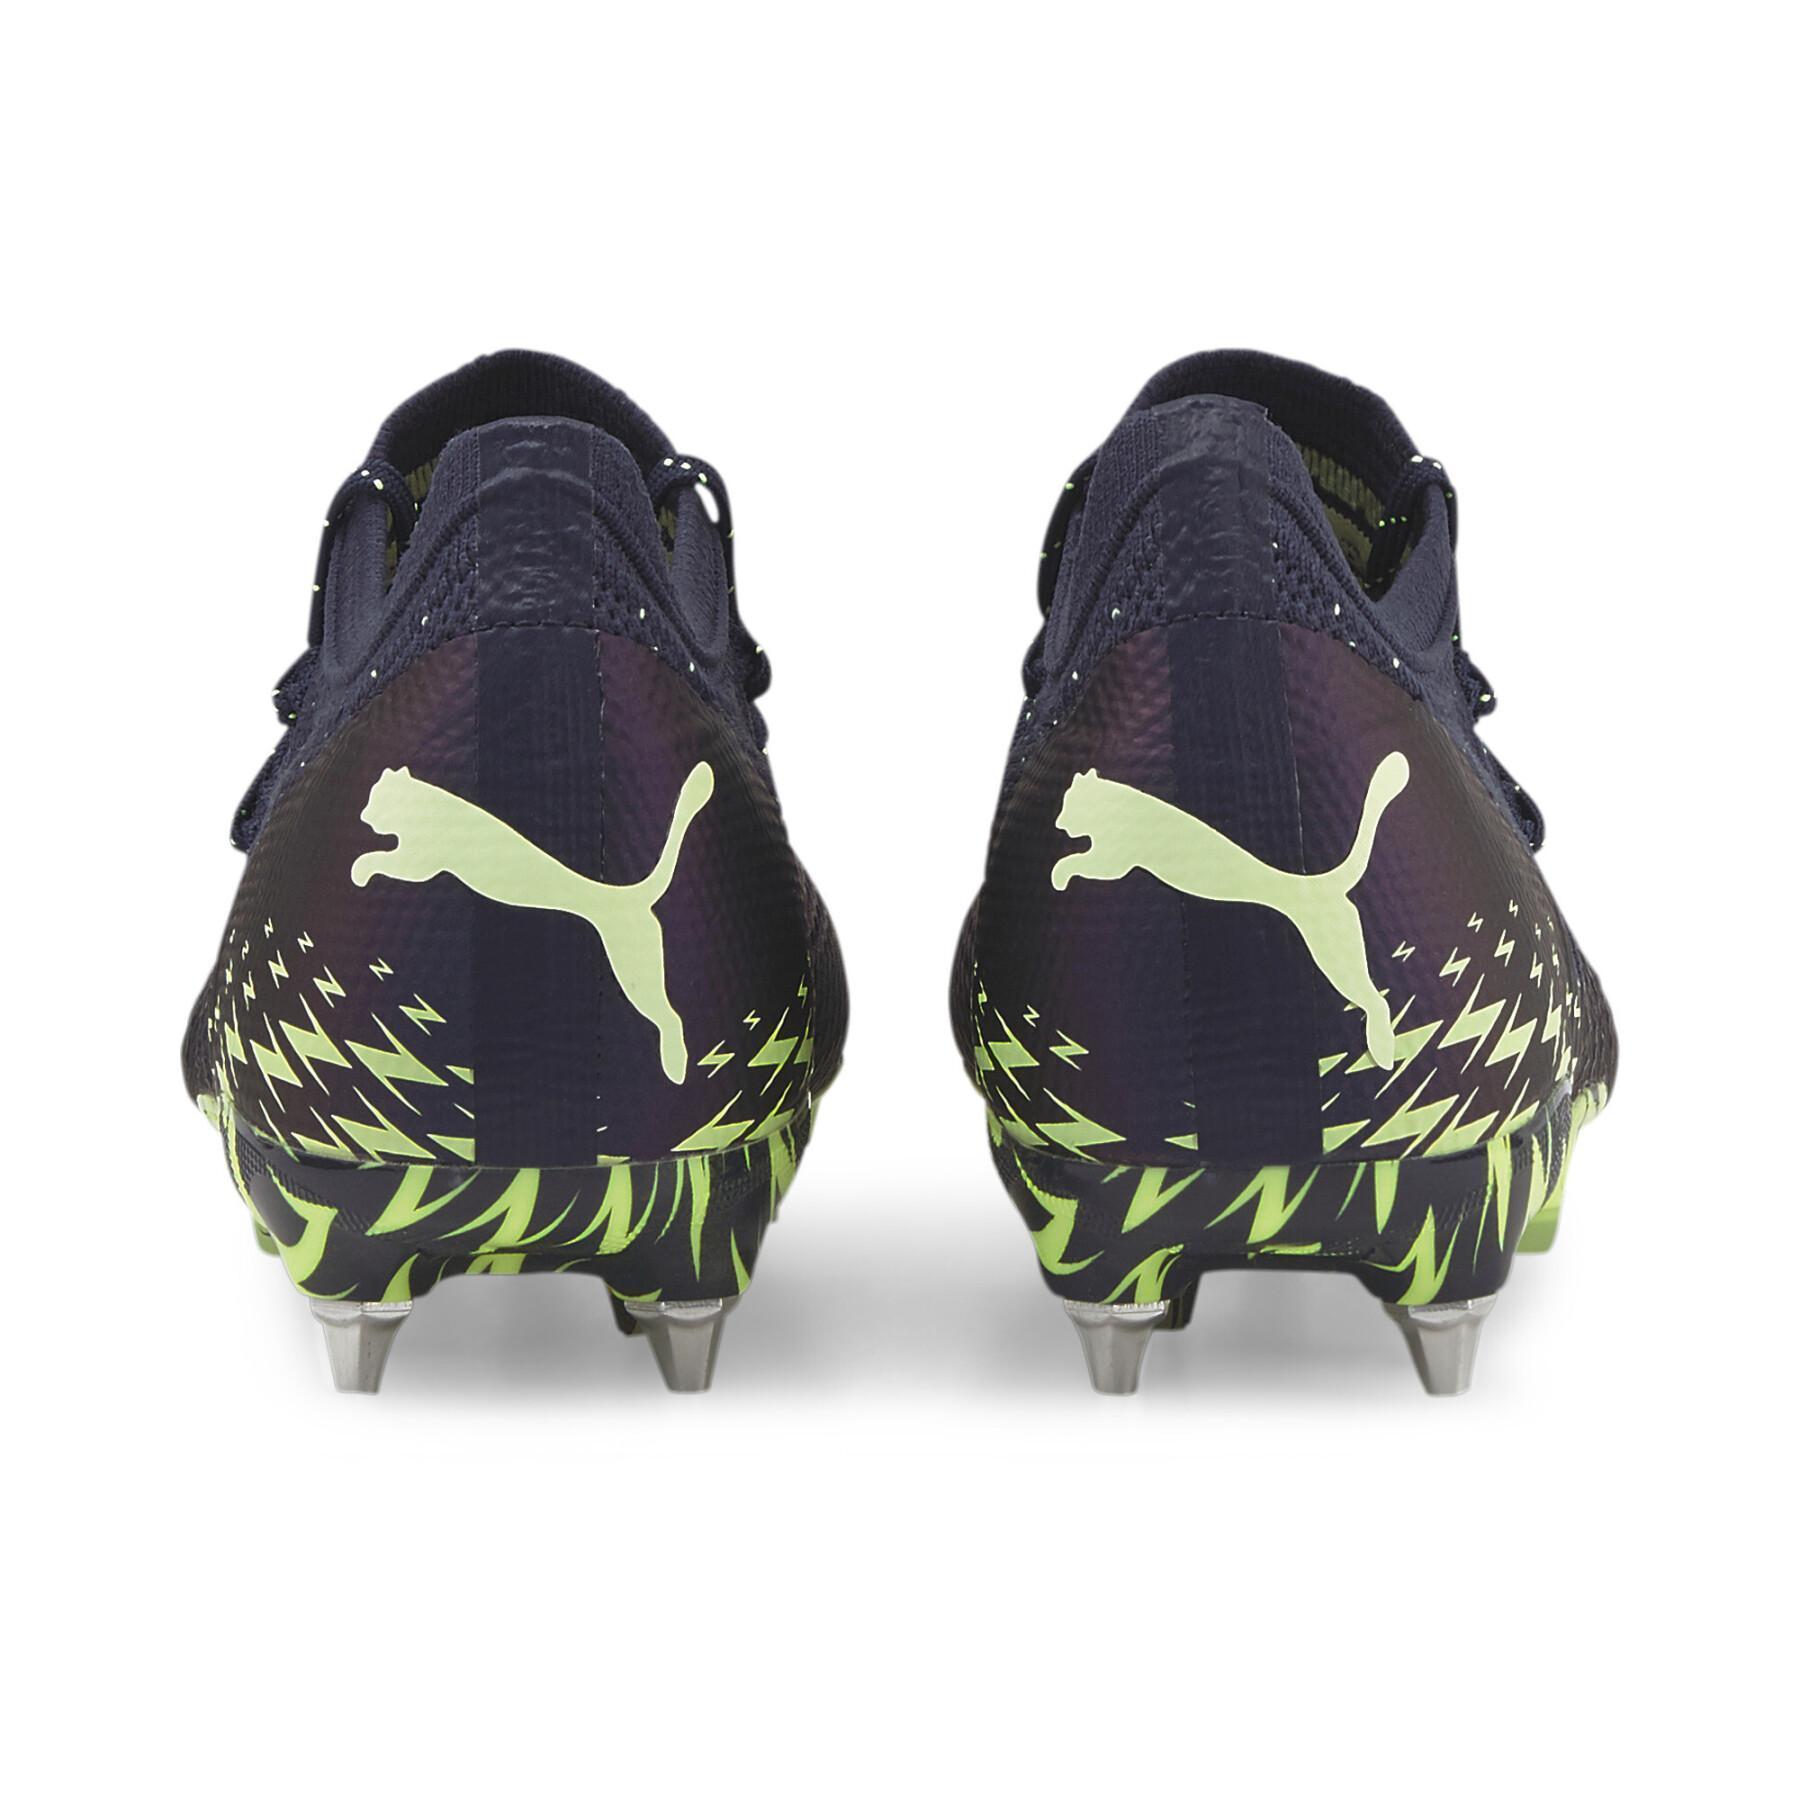 Sapatos de futebol Puma Future Z 1.4 MxSG - Fatest Pack